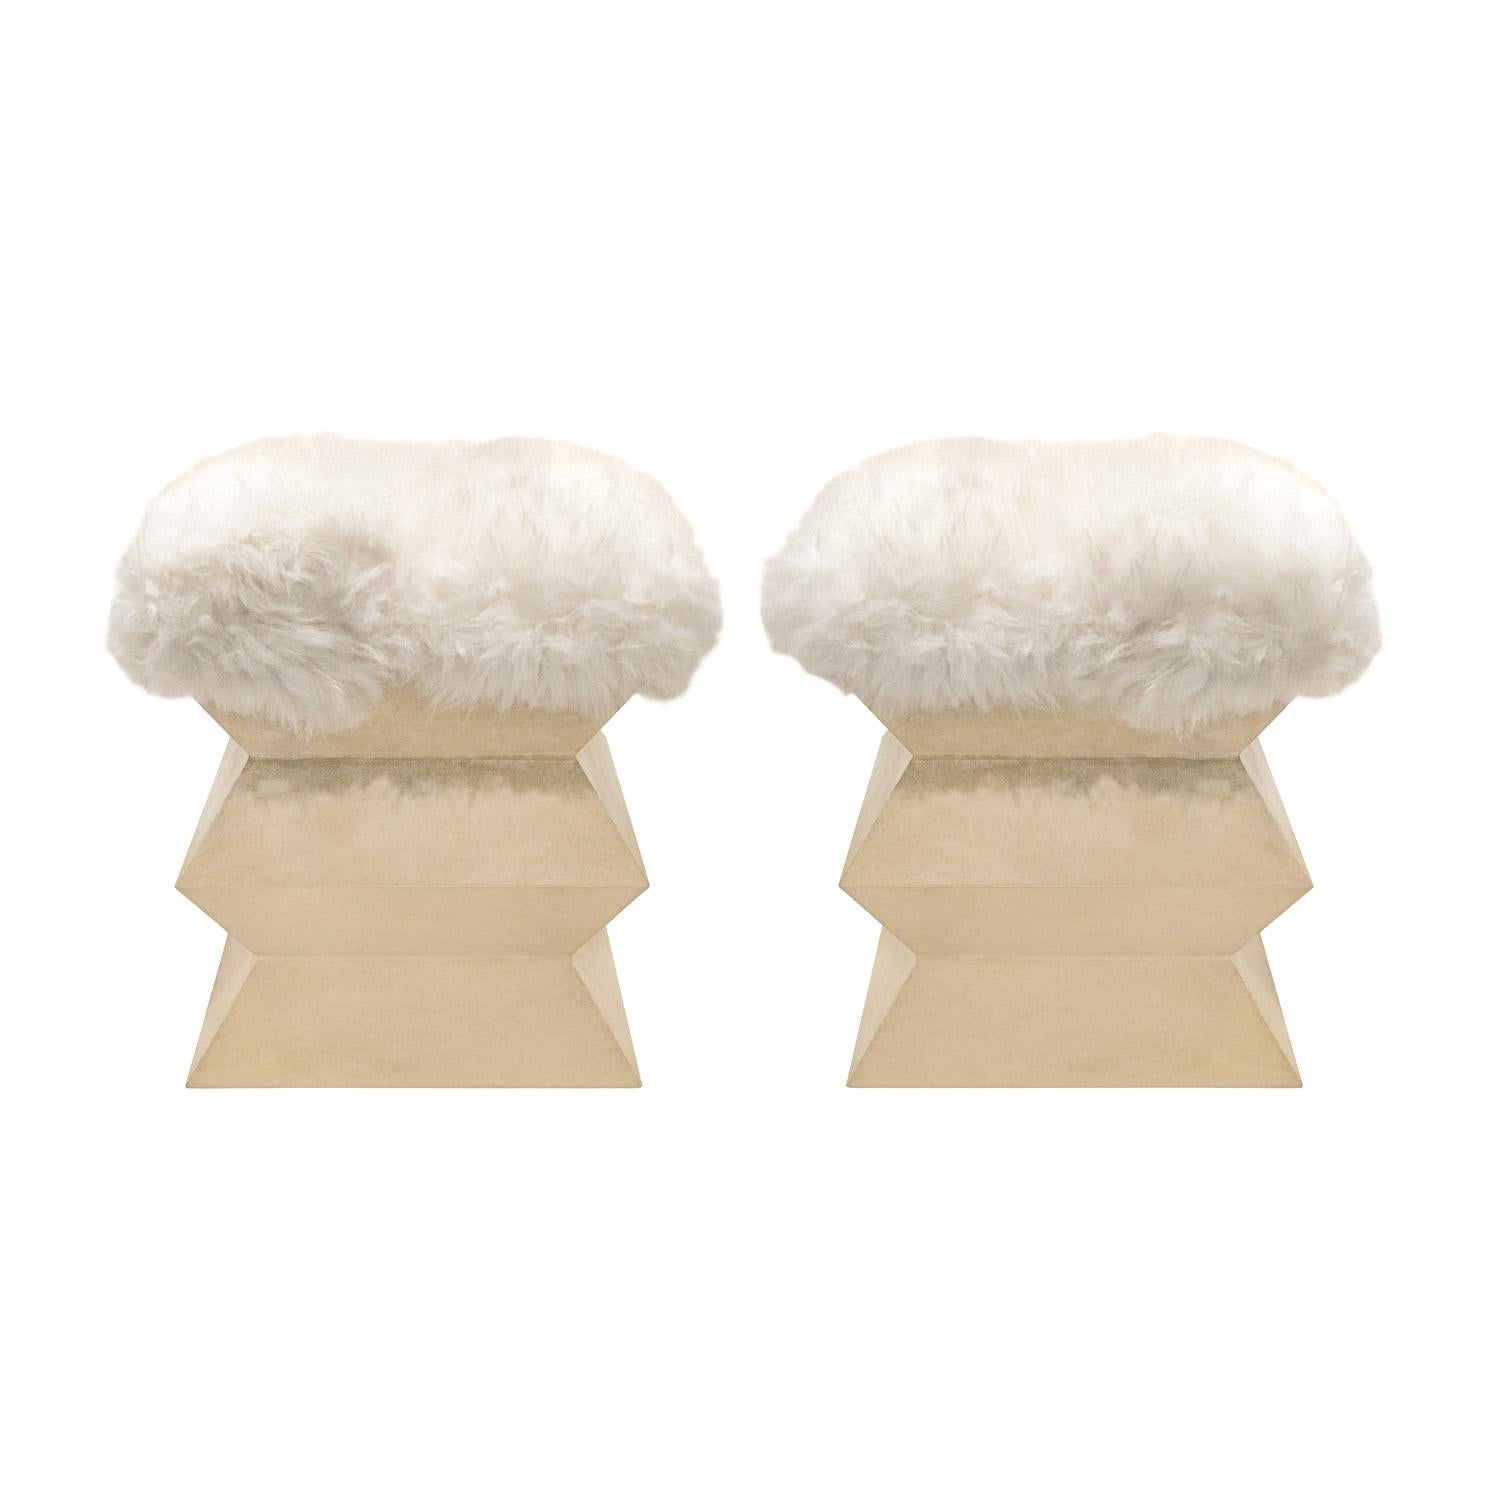 Paar Zickzack-Bänke aus lackiertem Ziegenleder mit Sitzflächen aus Pelz in der Art von Brancusi, Amerika 1970er Jahre.  Diese Bänke sind wunderschön gemacht und unglaublich stilvoll.

Abmessungen für jede:
T: 19 Zoll
B: 19 Zoll 
H: 20 Zoll
Basen: 